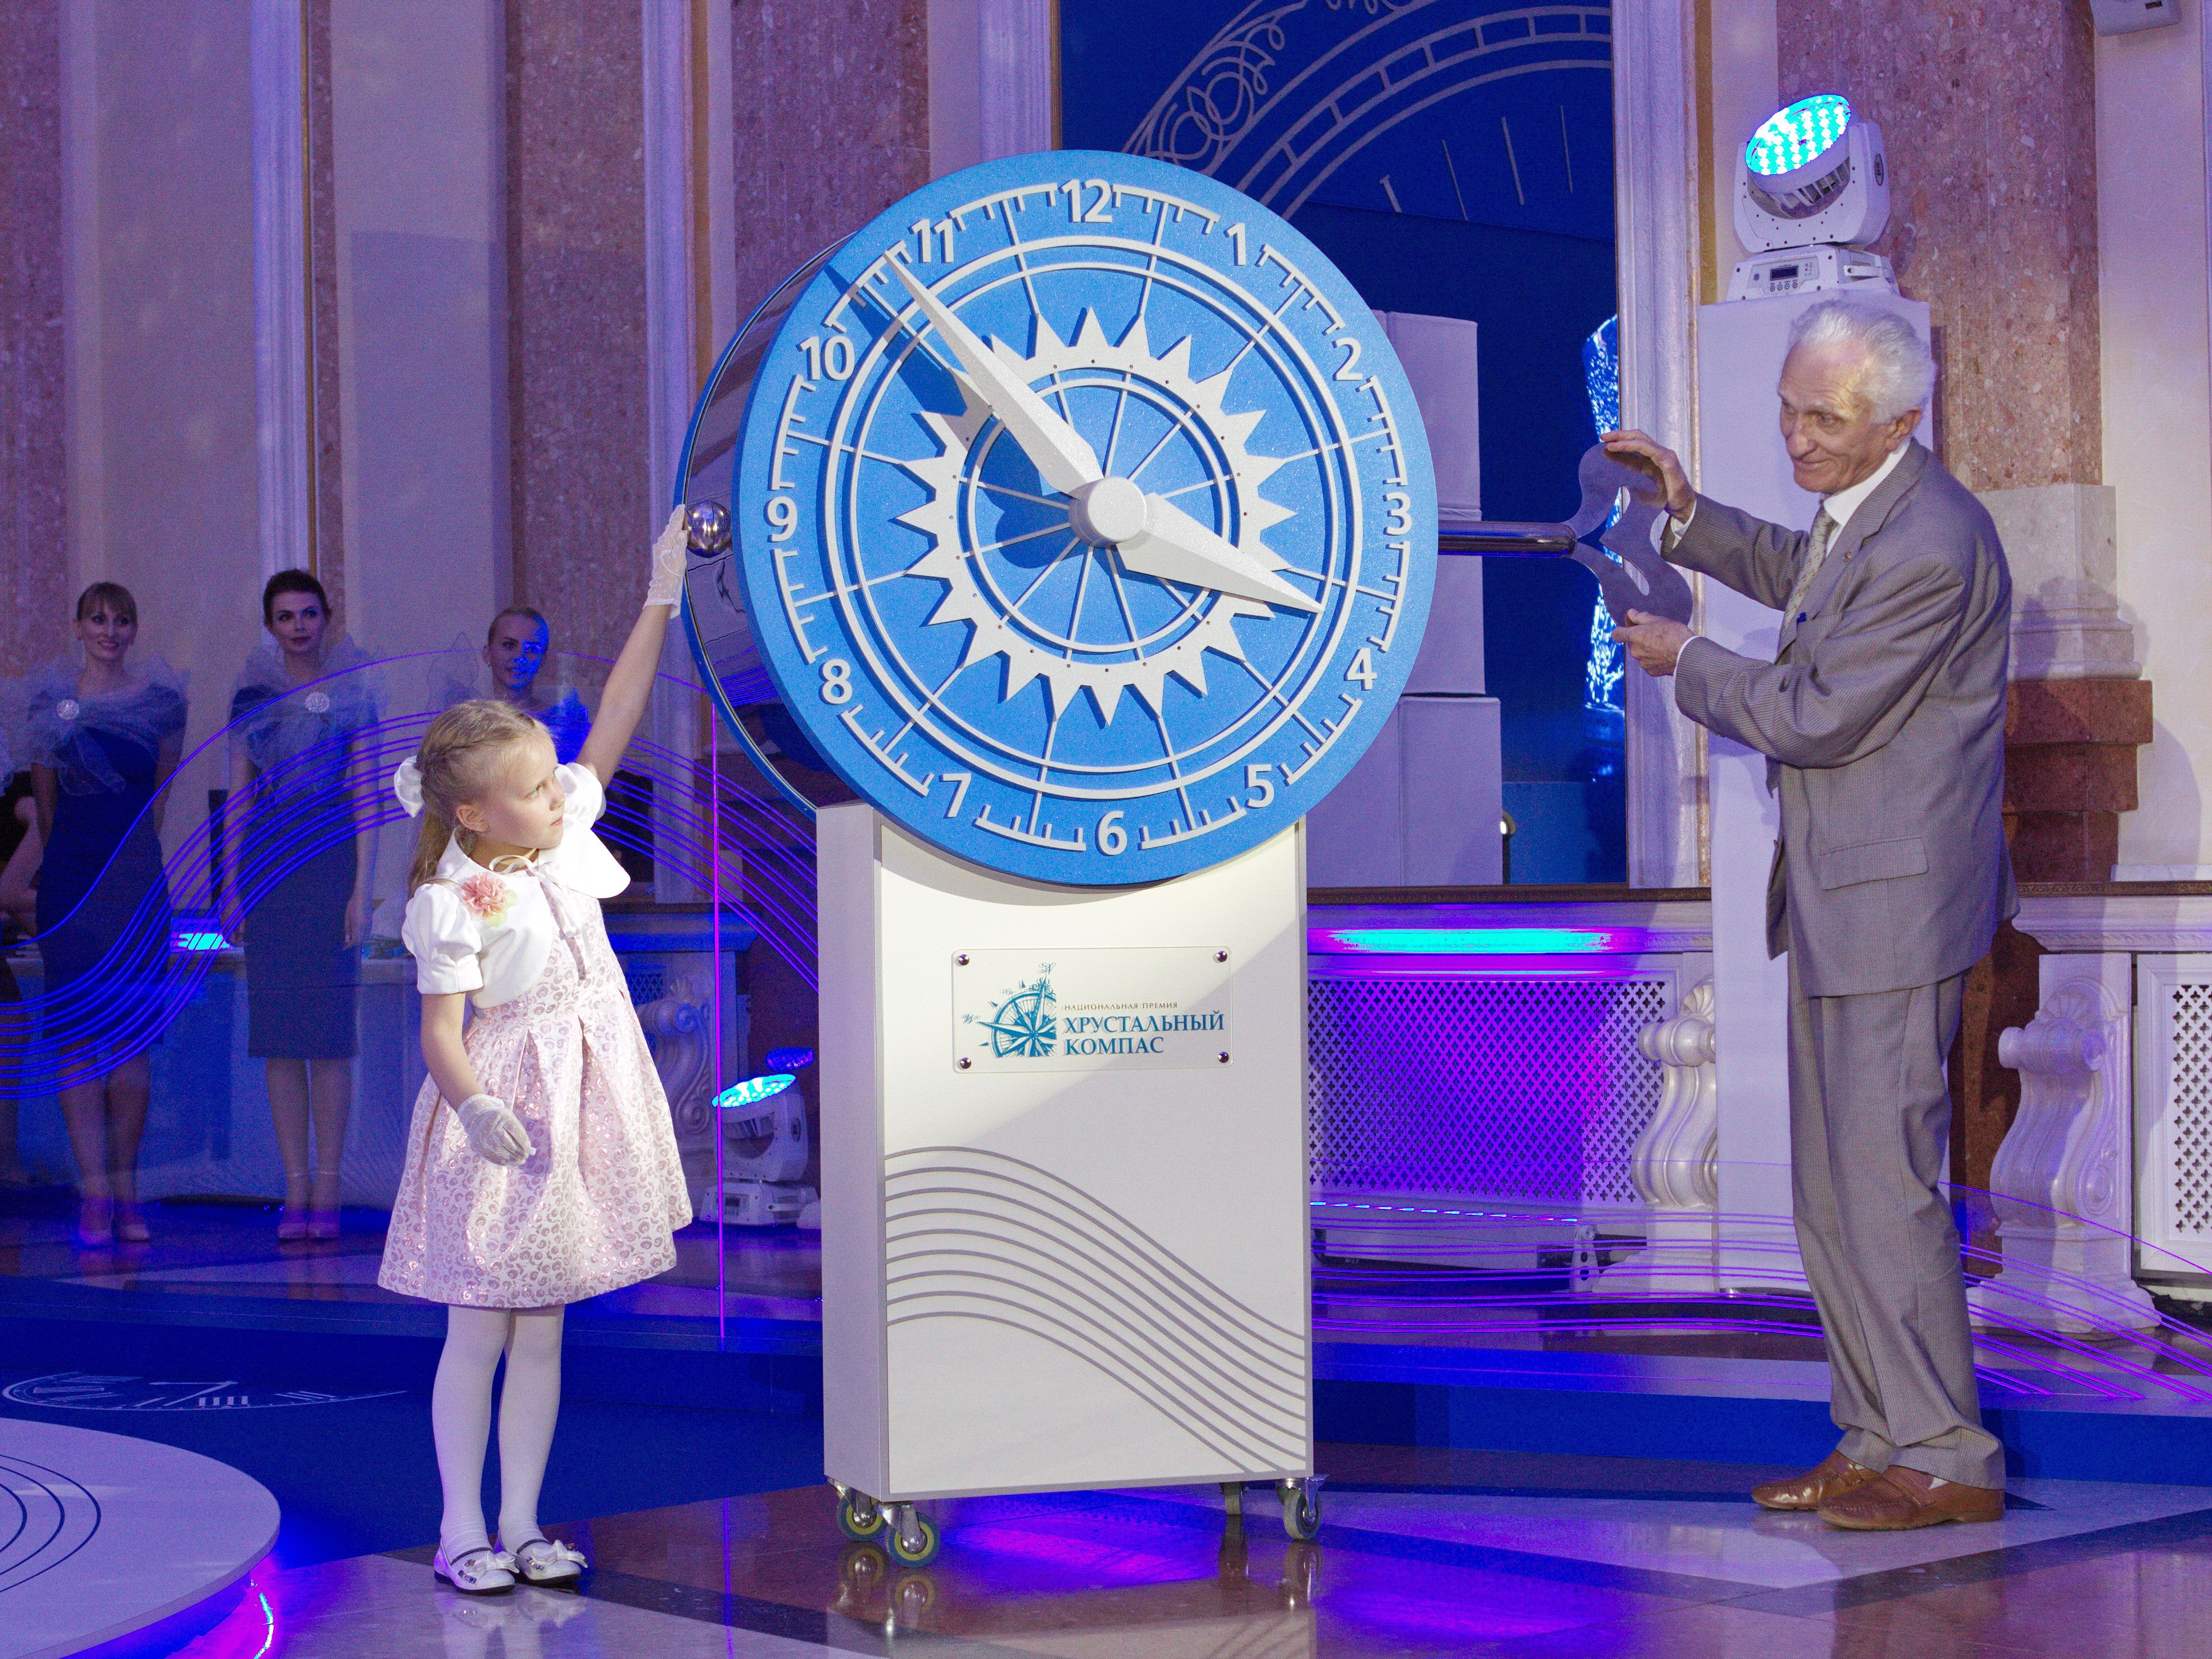 Кубанский проект стал победителем национальной премии «Хрустальный компас»